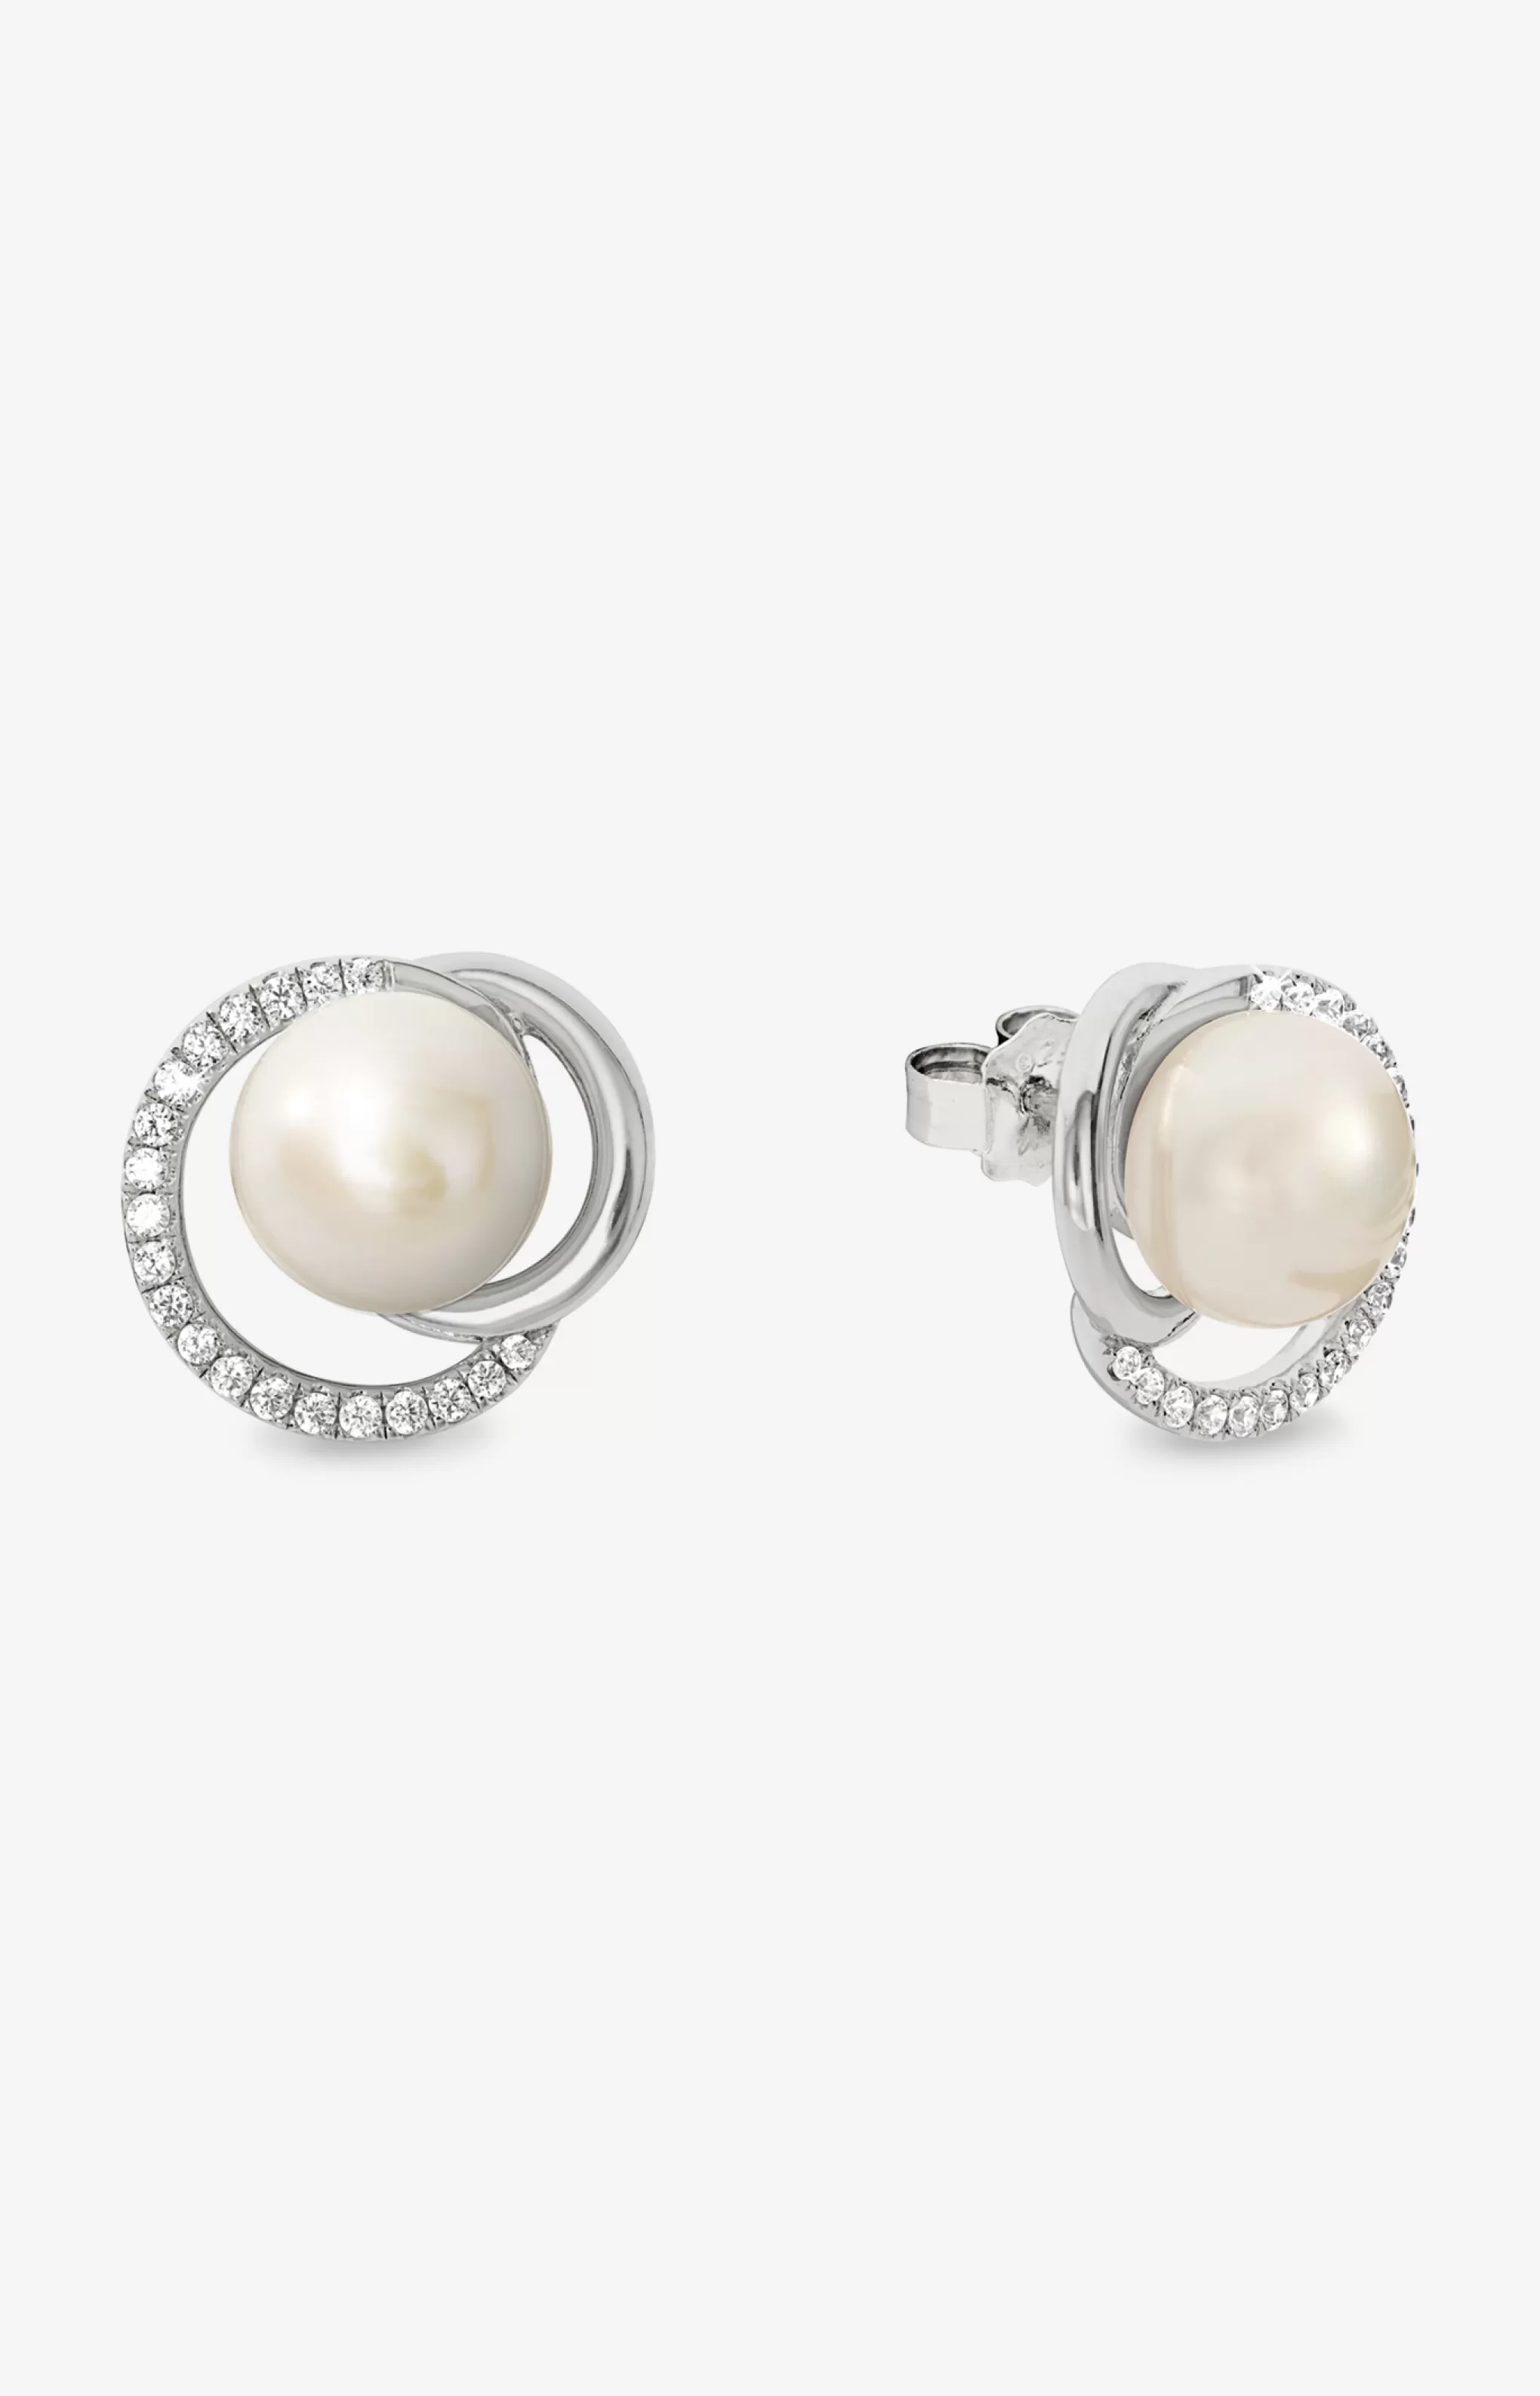 Earrings | Jewellery*JOOP Earrings | Jewellery Stud earrings in